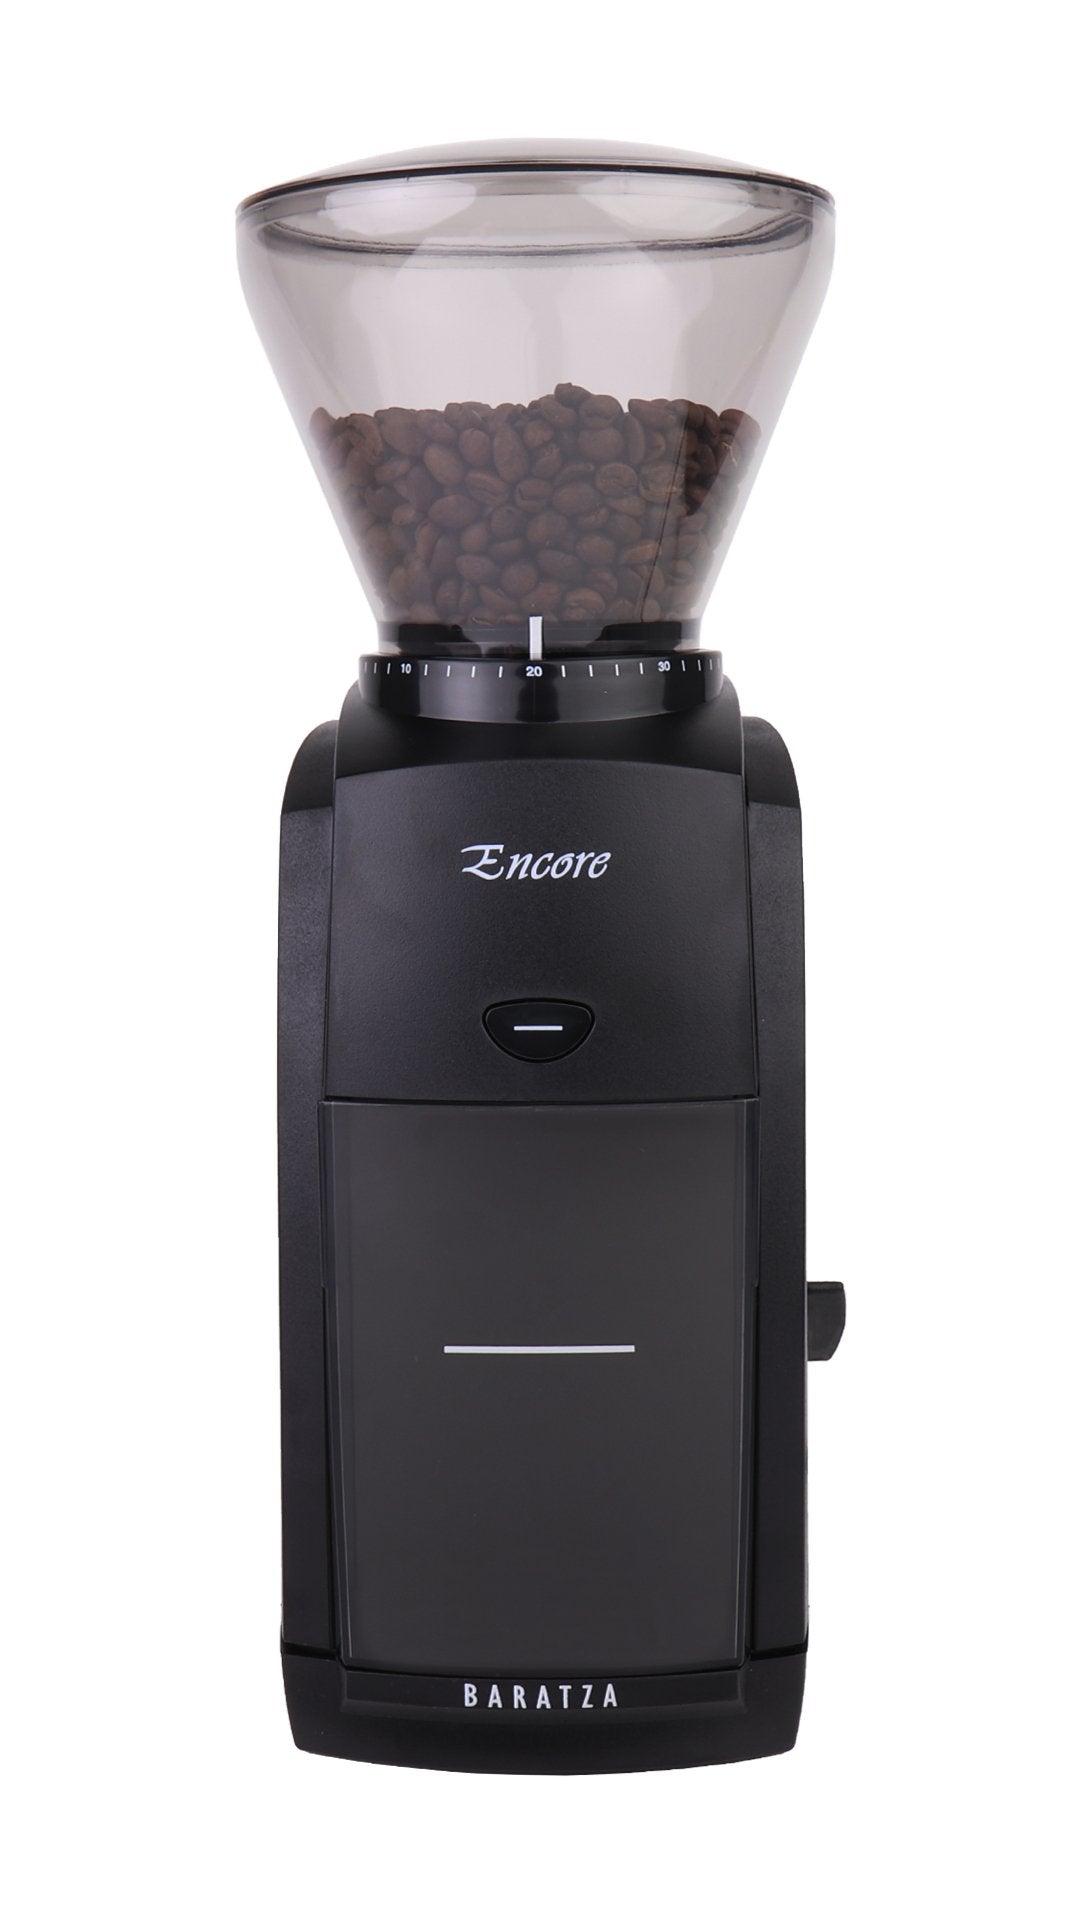 https://www.wolfcoffee.com/cdn/shop/products/baratza-encore-burr-coffee-grinder-382005_2048x.jpg?v=1698433499